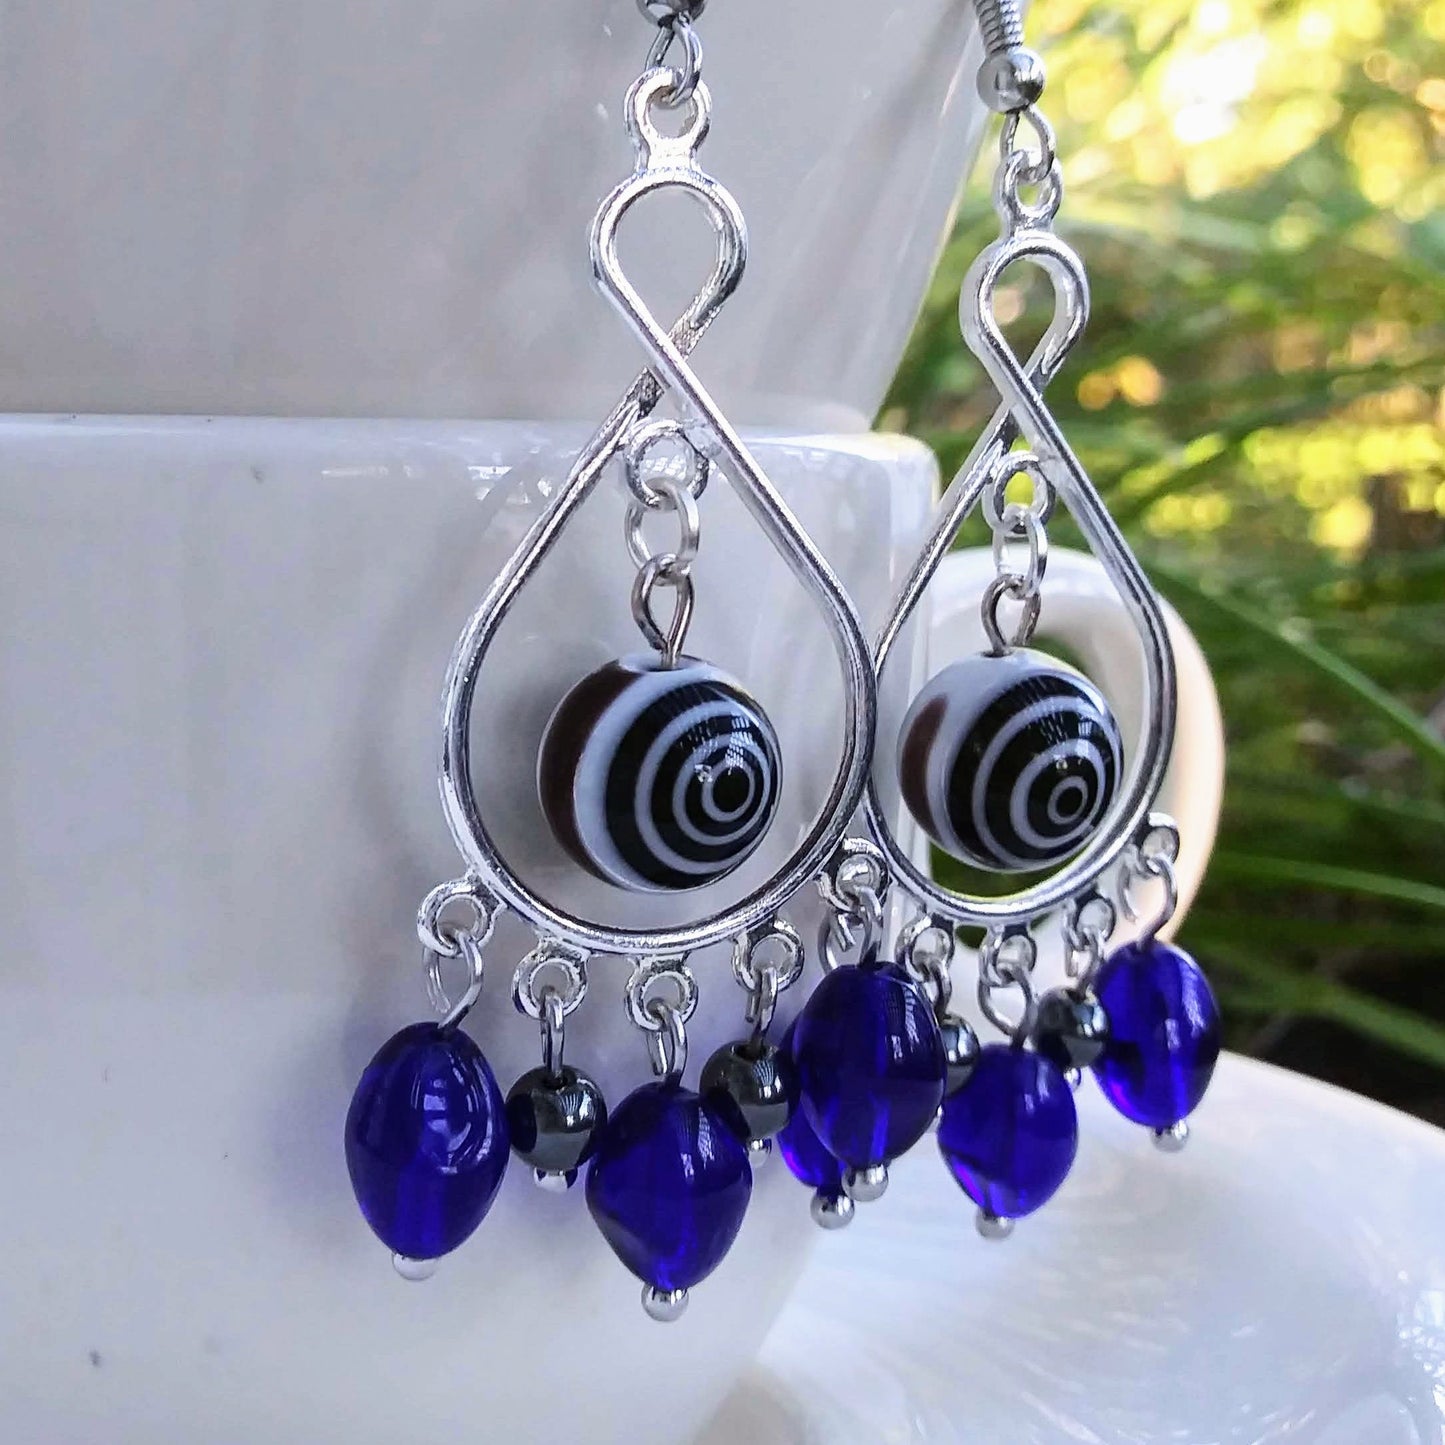 Cobalt Blue Evil Eye Chandelier Earrings in Hematite & Glass